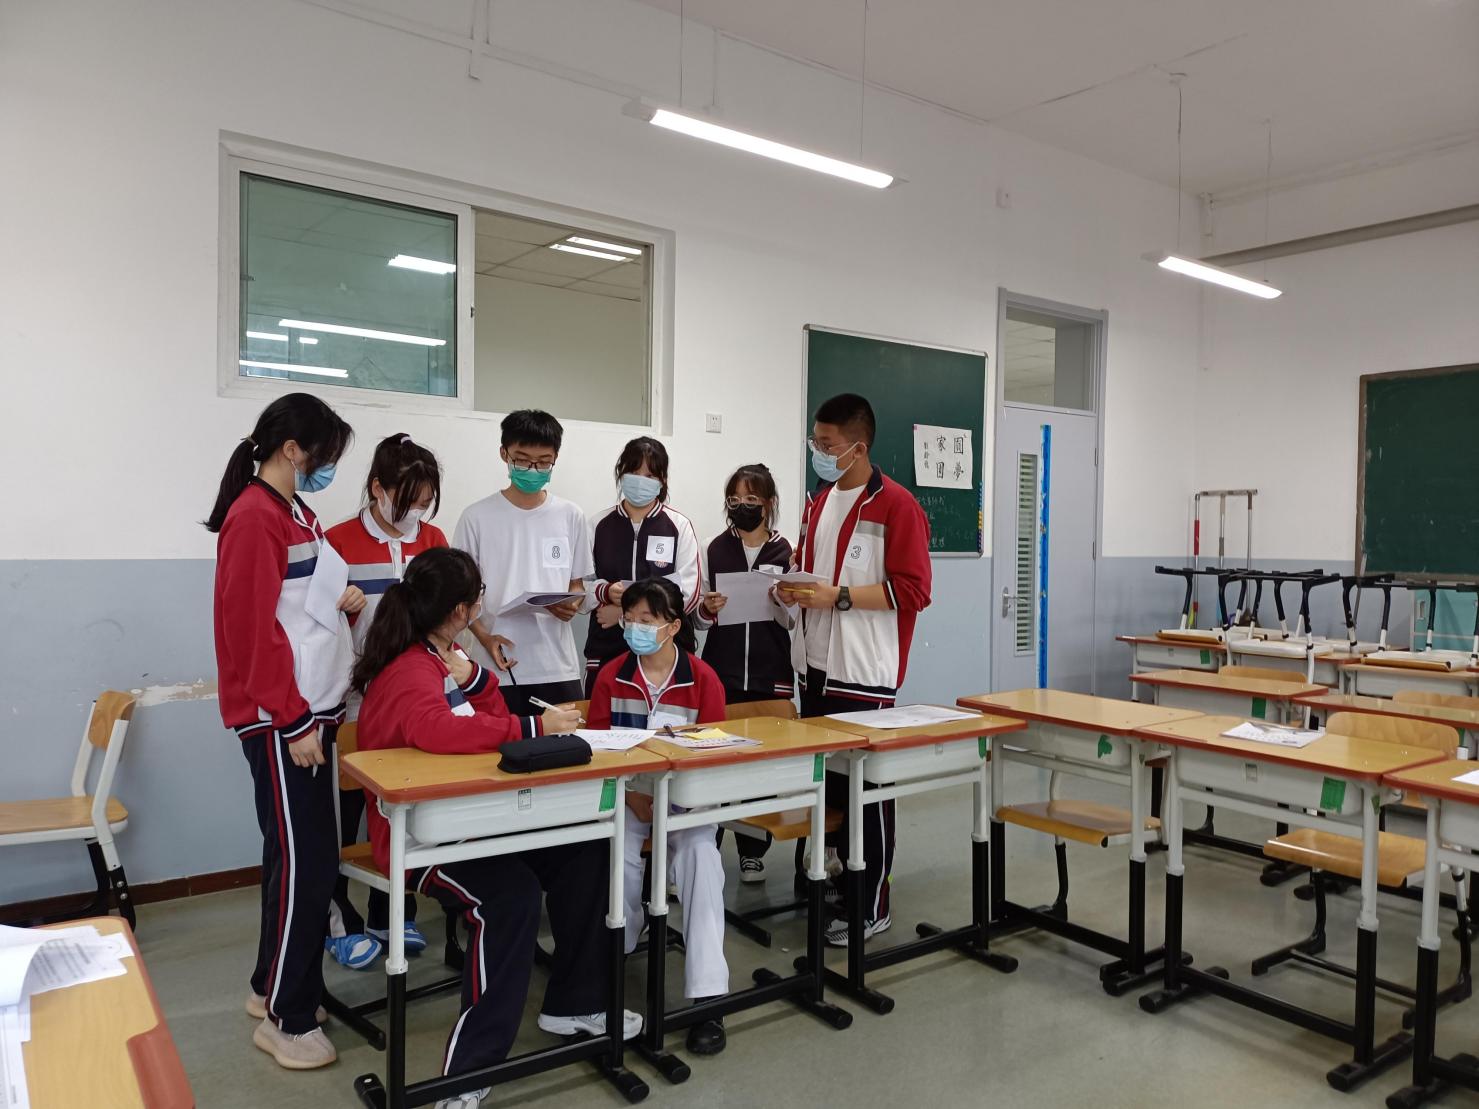 预见未来的自己——北京市第七中学校园模拟招聘会成功举办